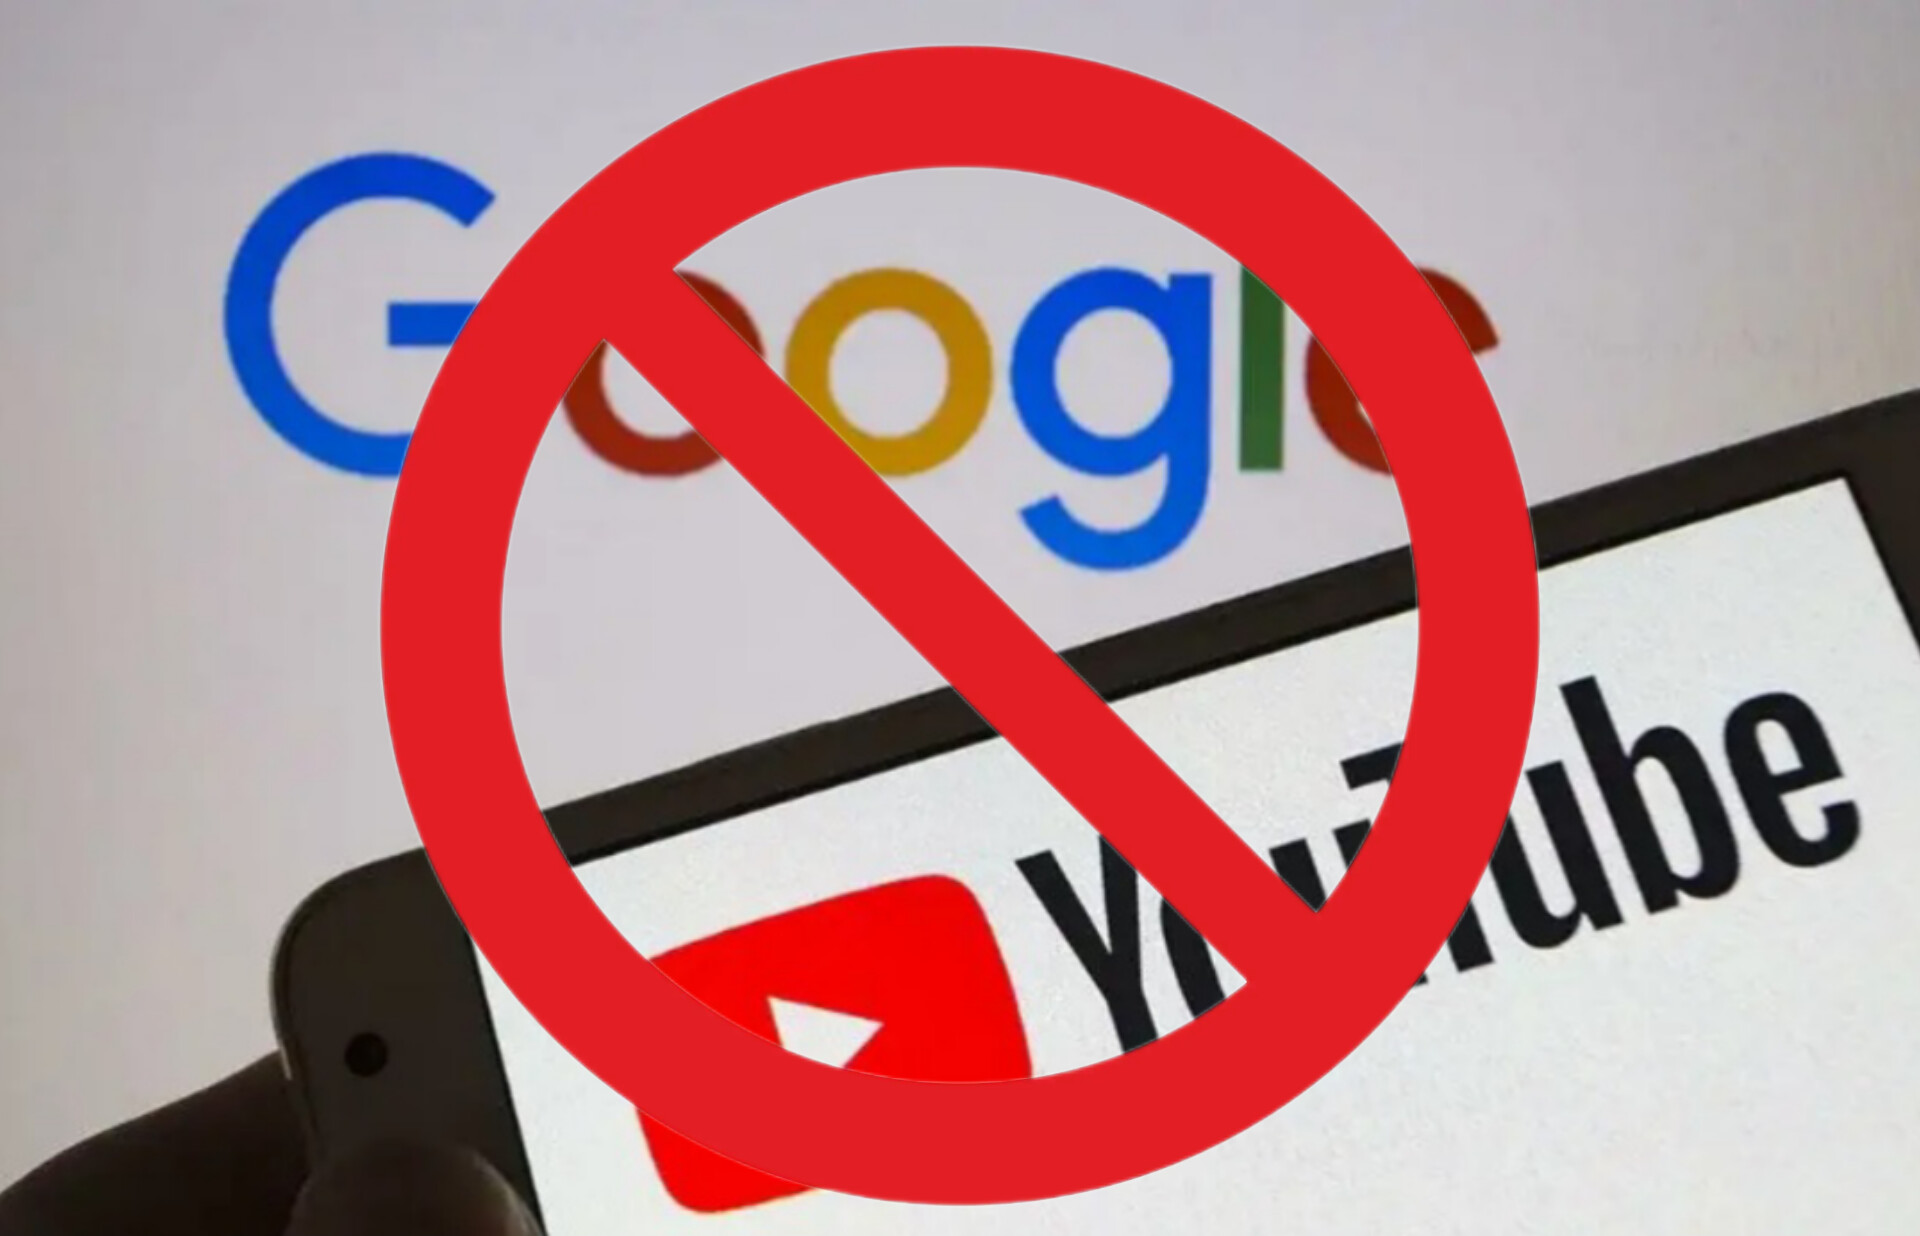 Гугл заблокируют в России. Гугл заблокирован. VPN-сервисы Железный занавес.